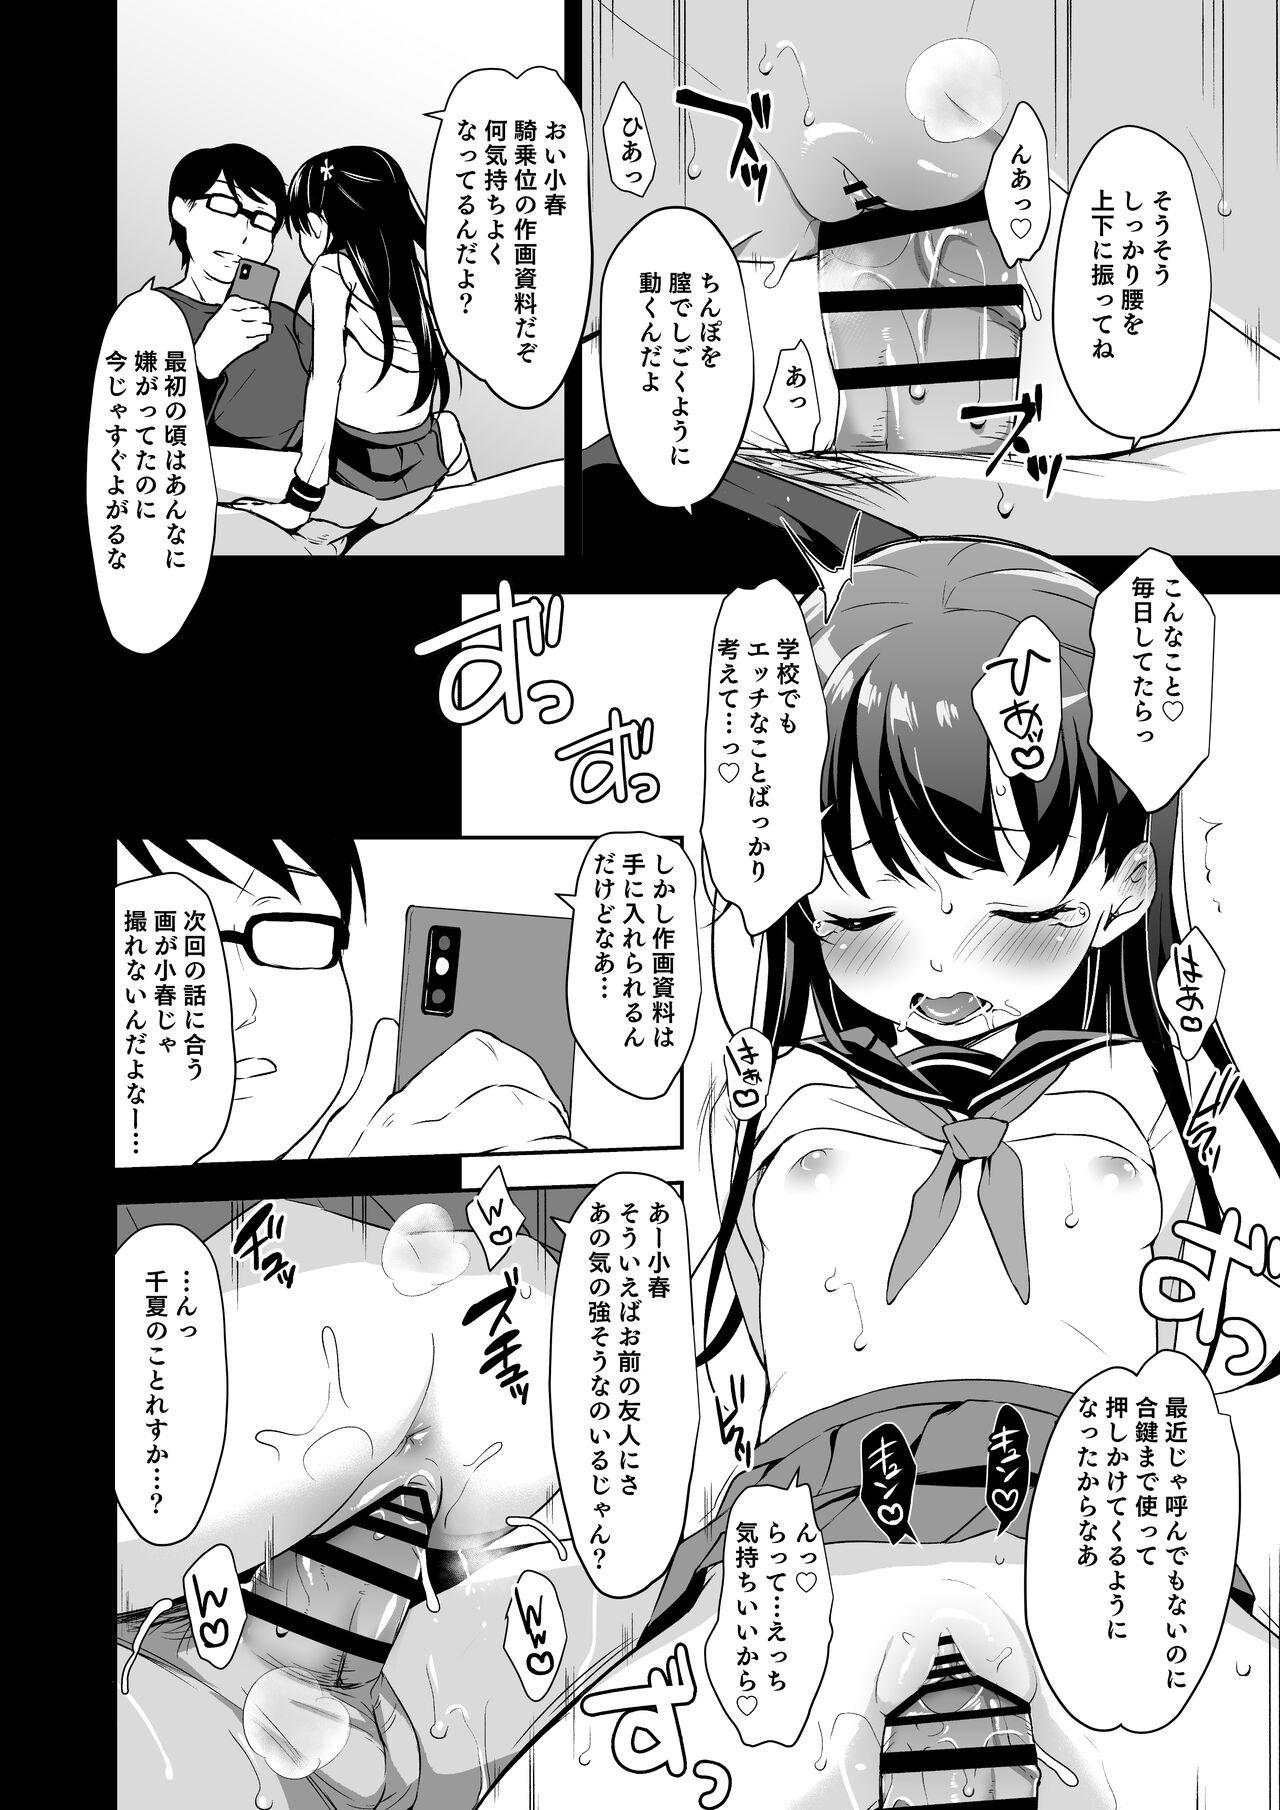 Rachirare Shoujo wa, Manga no Naka de __. Chinatsu Hen 2